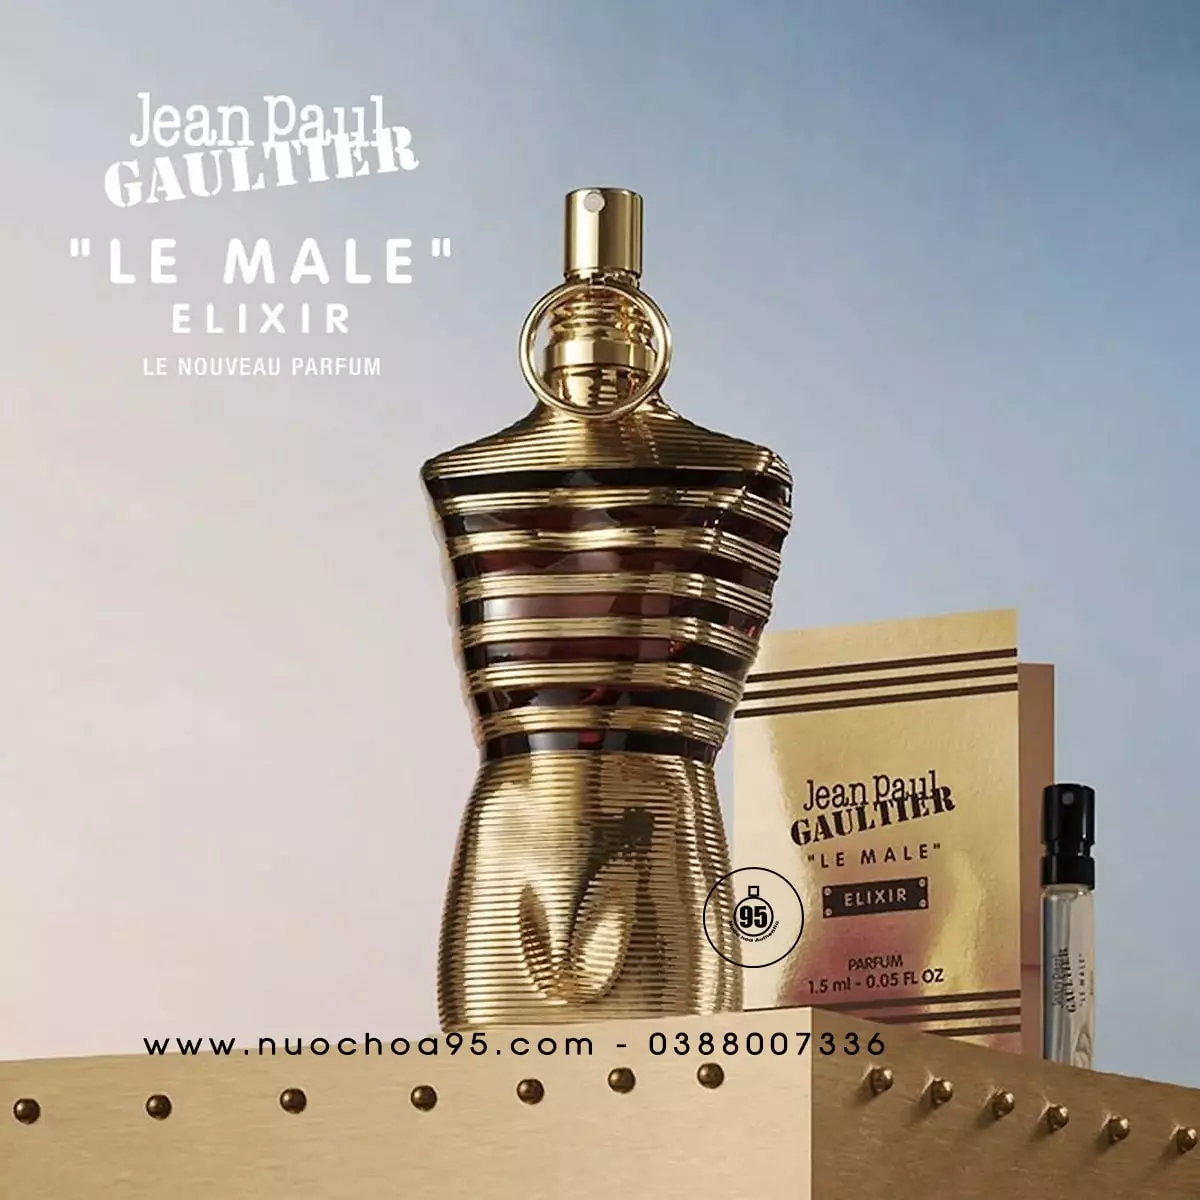 Nước hoa Jean Paul Gaultier Le Male Elixir - Ảnh 2